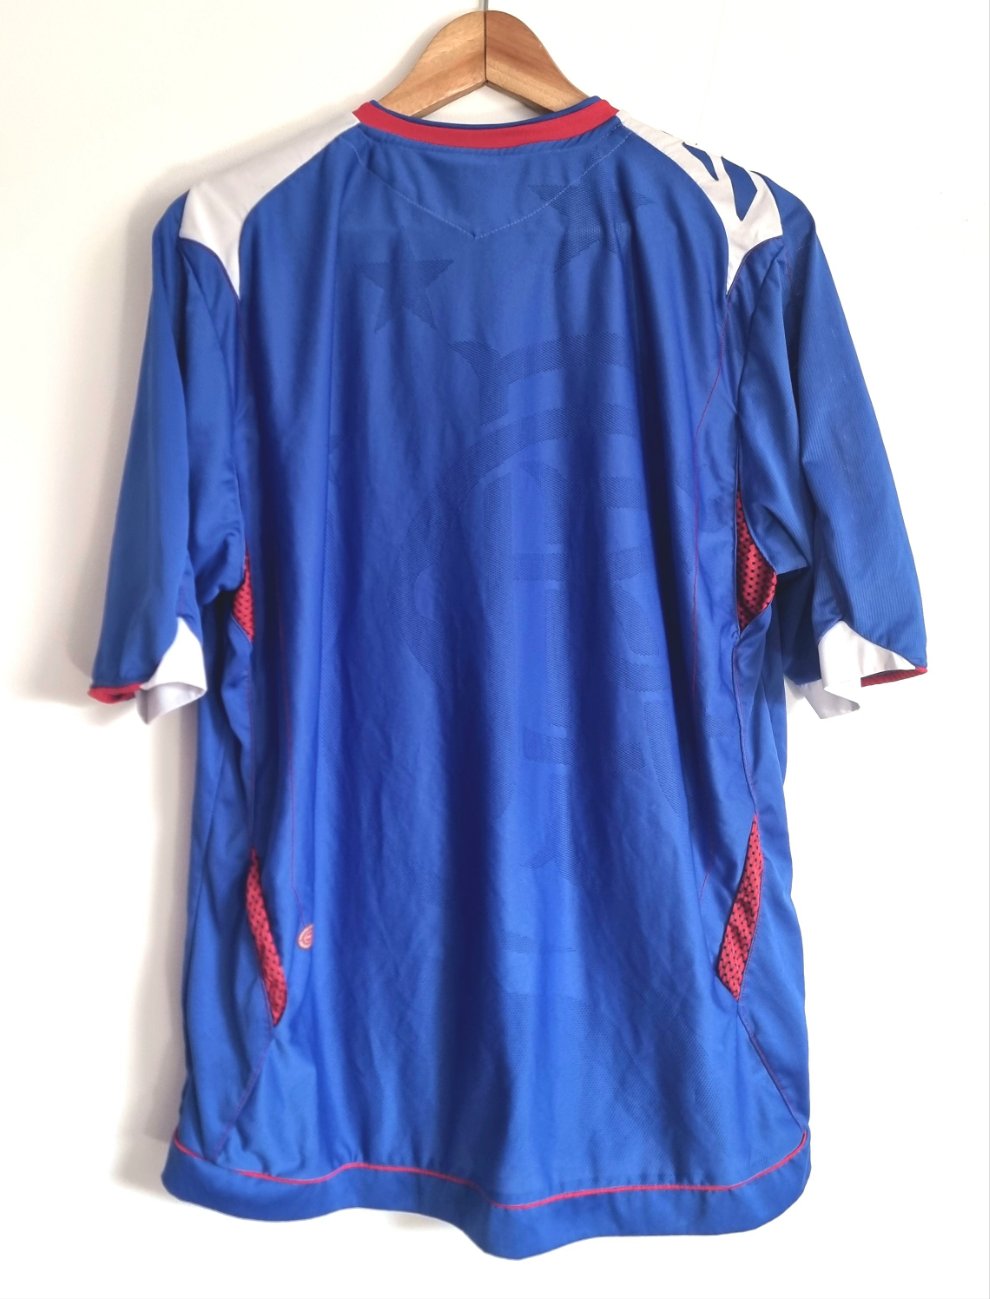 Umbro Rangers 06/07 Home Shirt XL